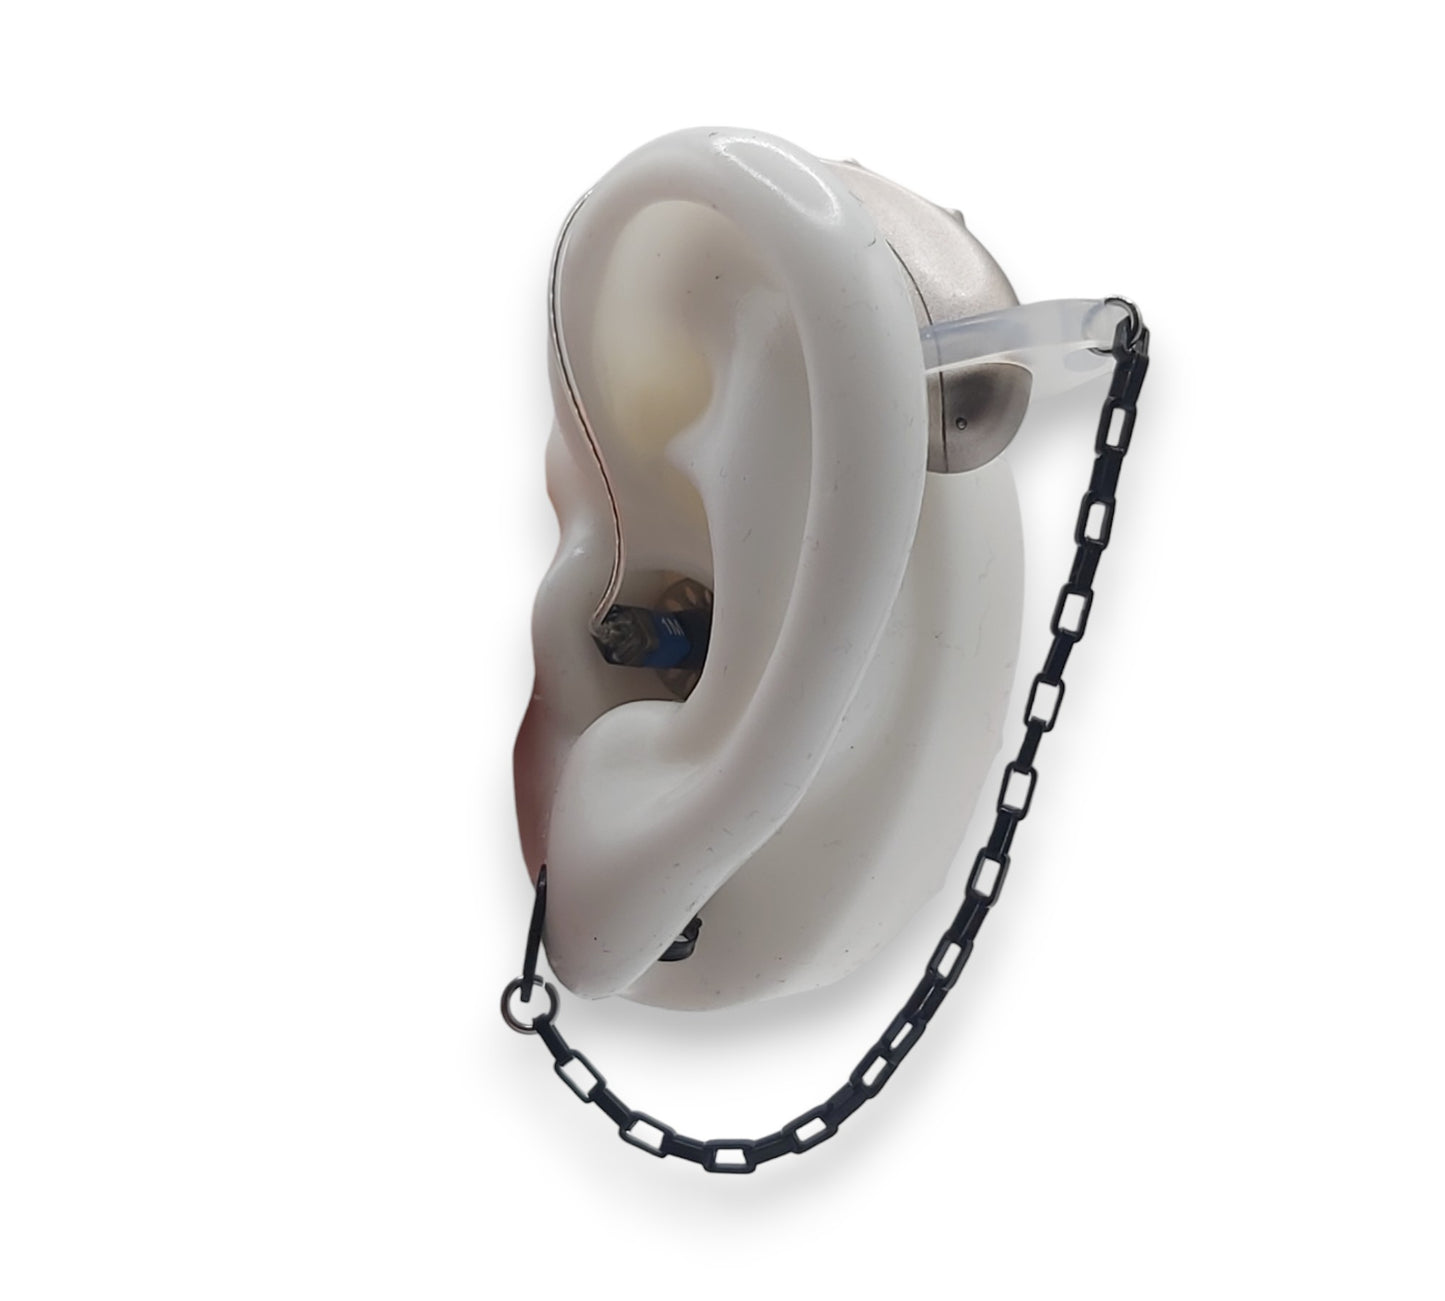 Zwarte kabelketting EarLinks - Hoortoestellen